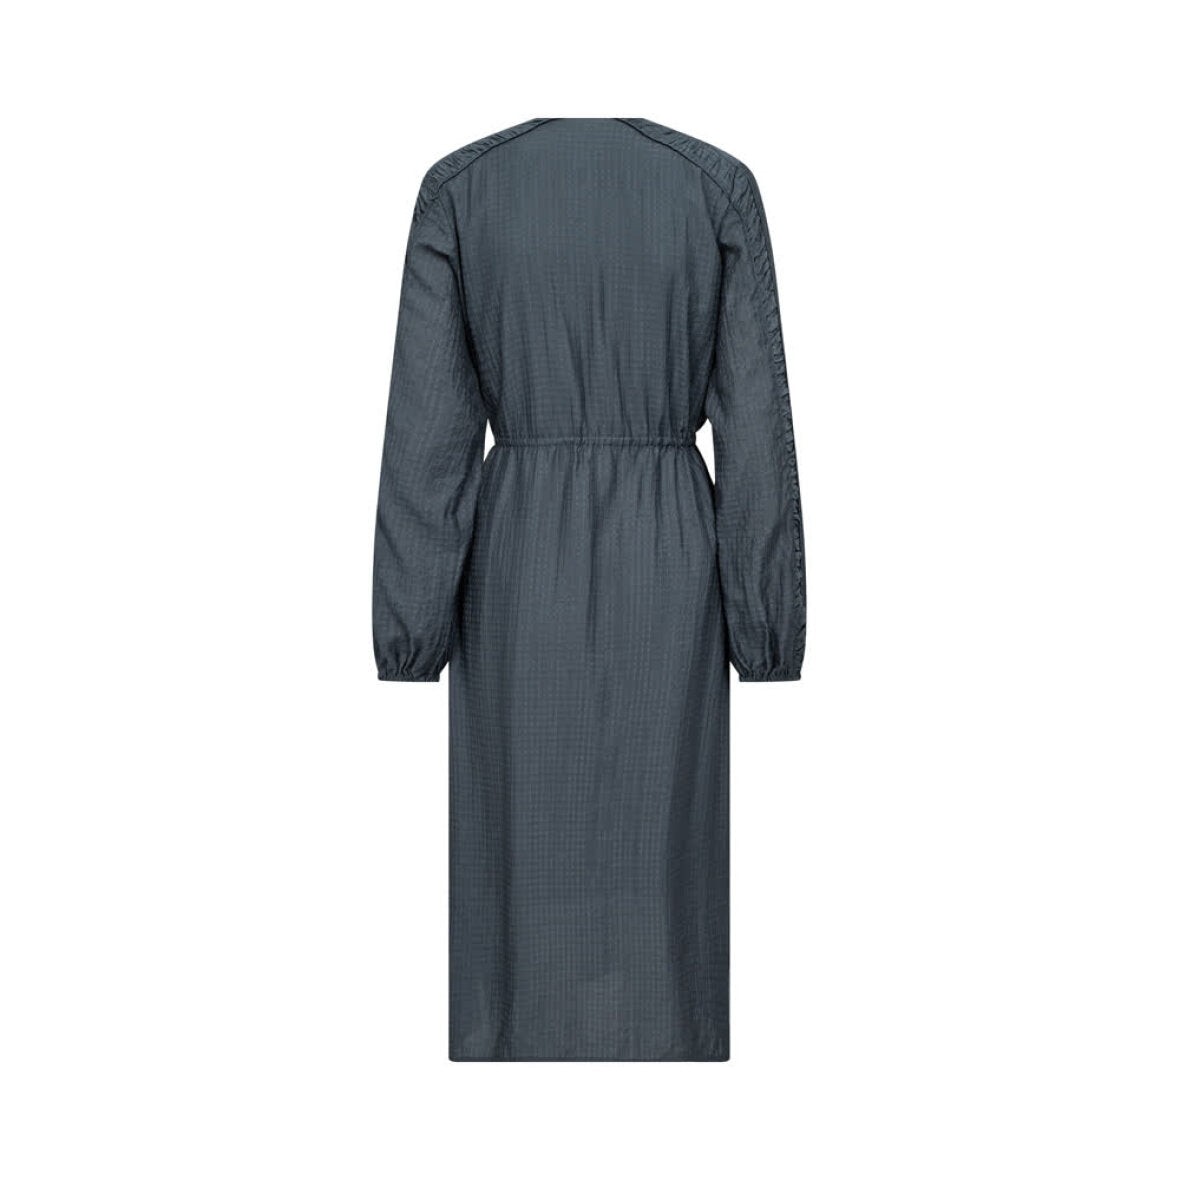 Robe grise manches longues élastique à la taille boutique province de luxembopurg